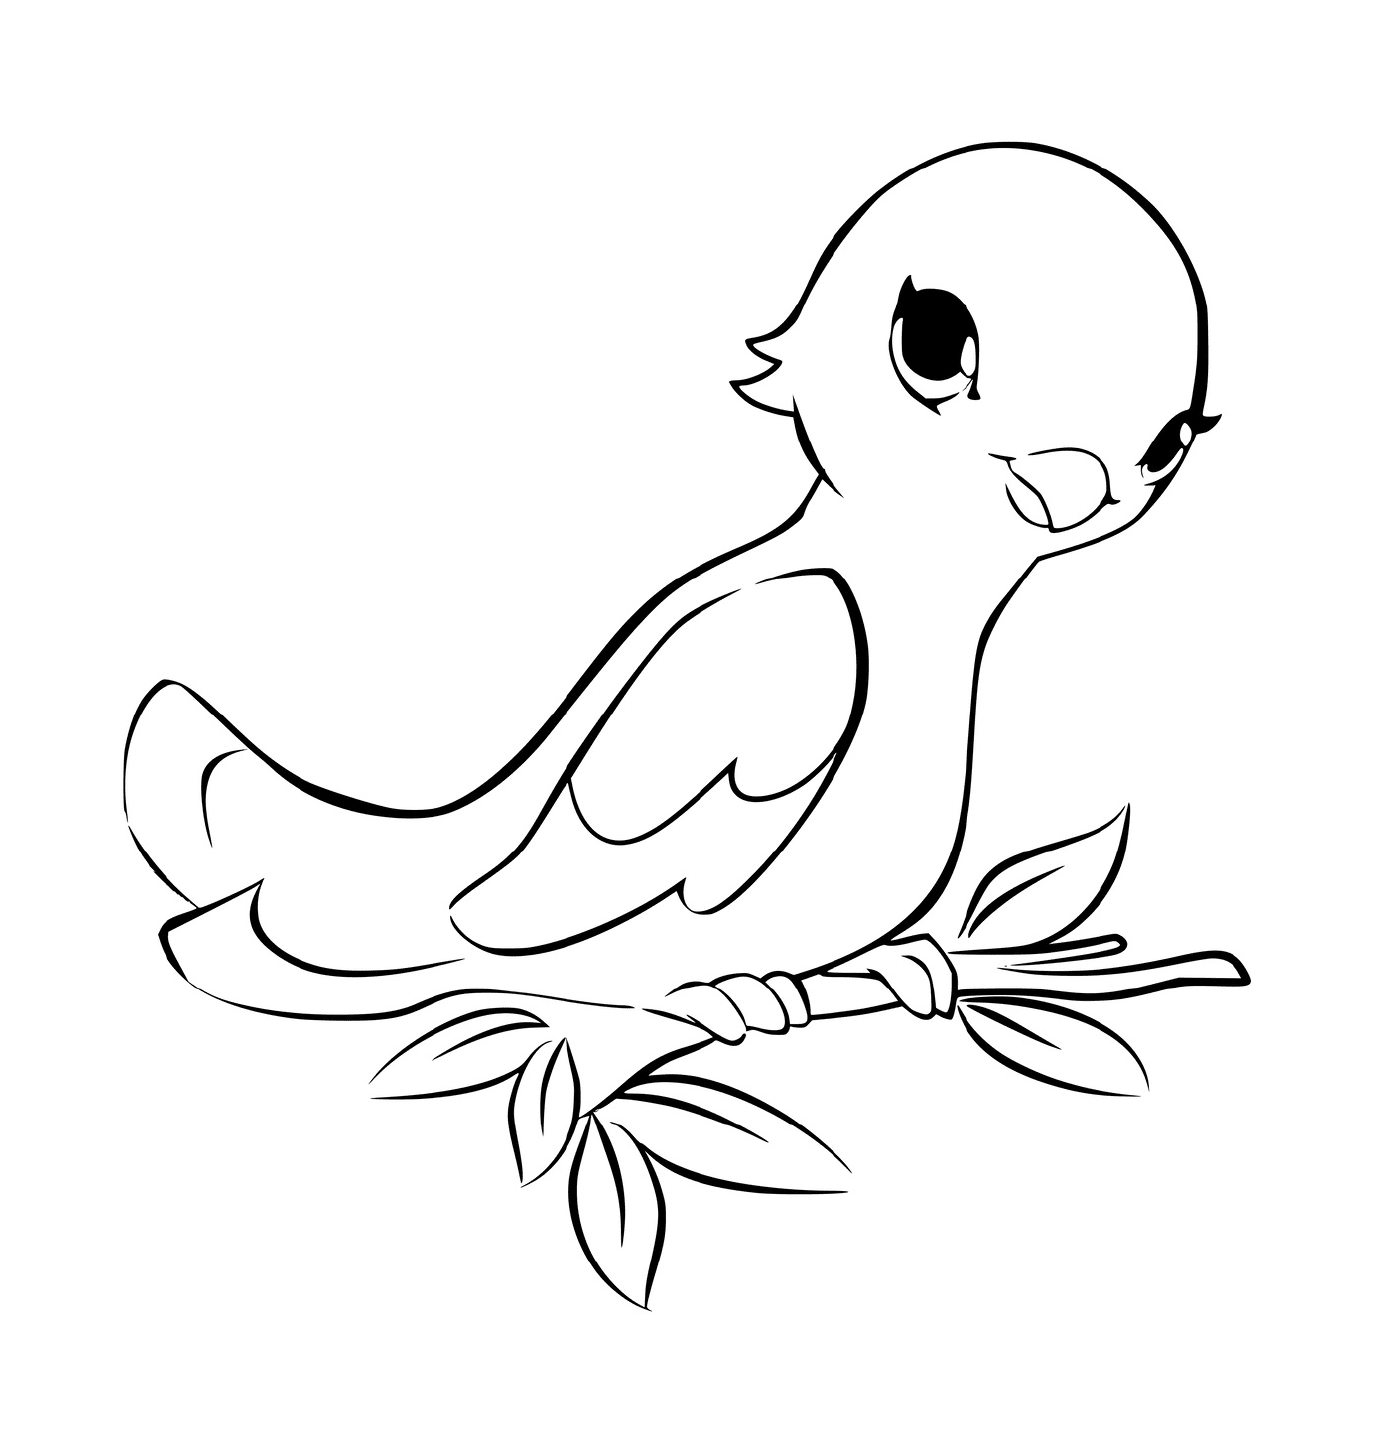  Pássaro empolado em um ramo 